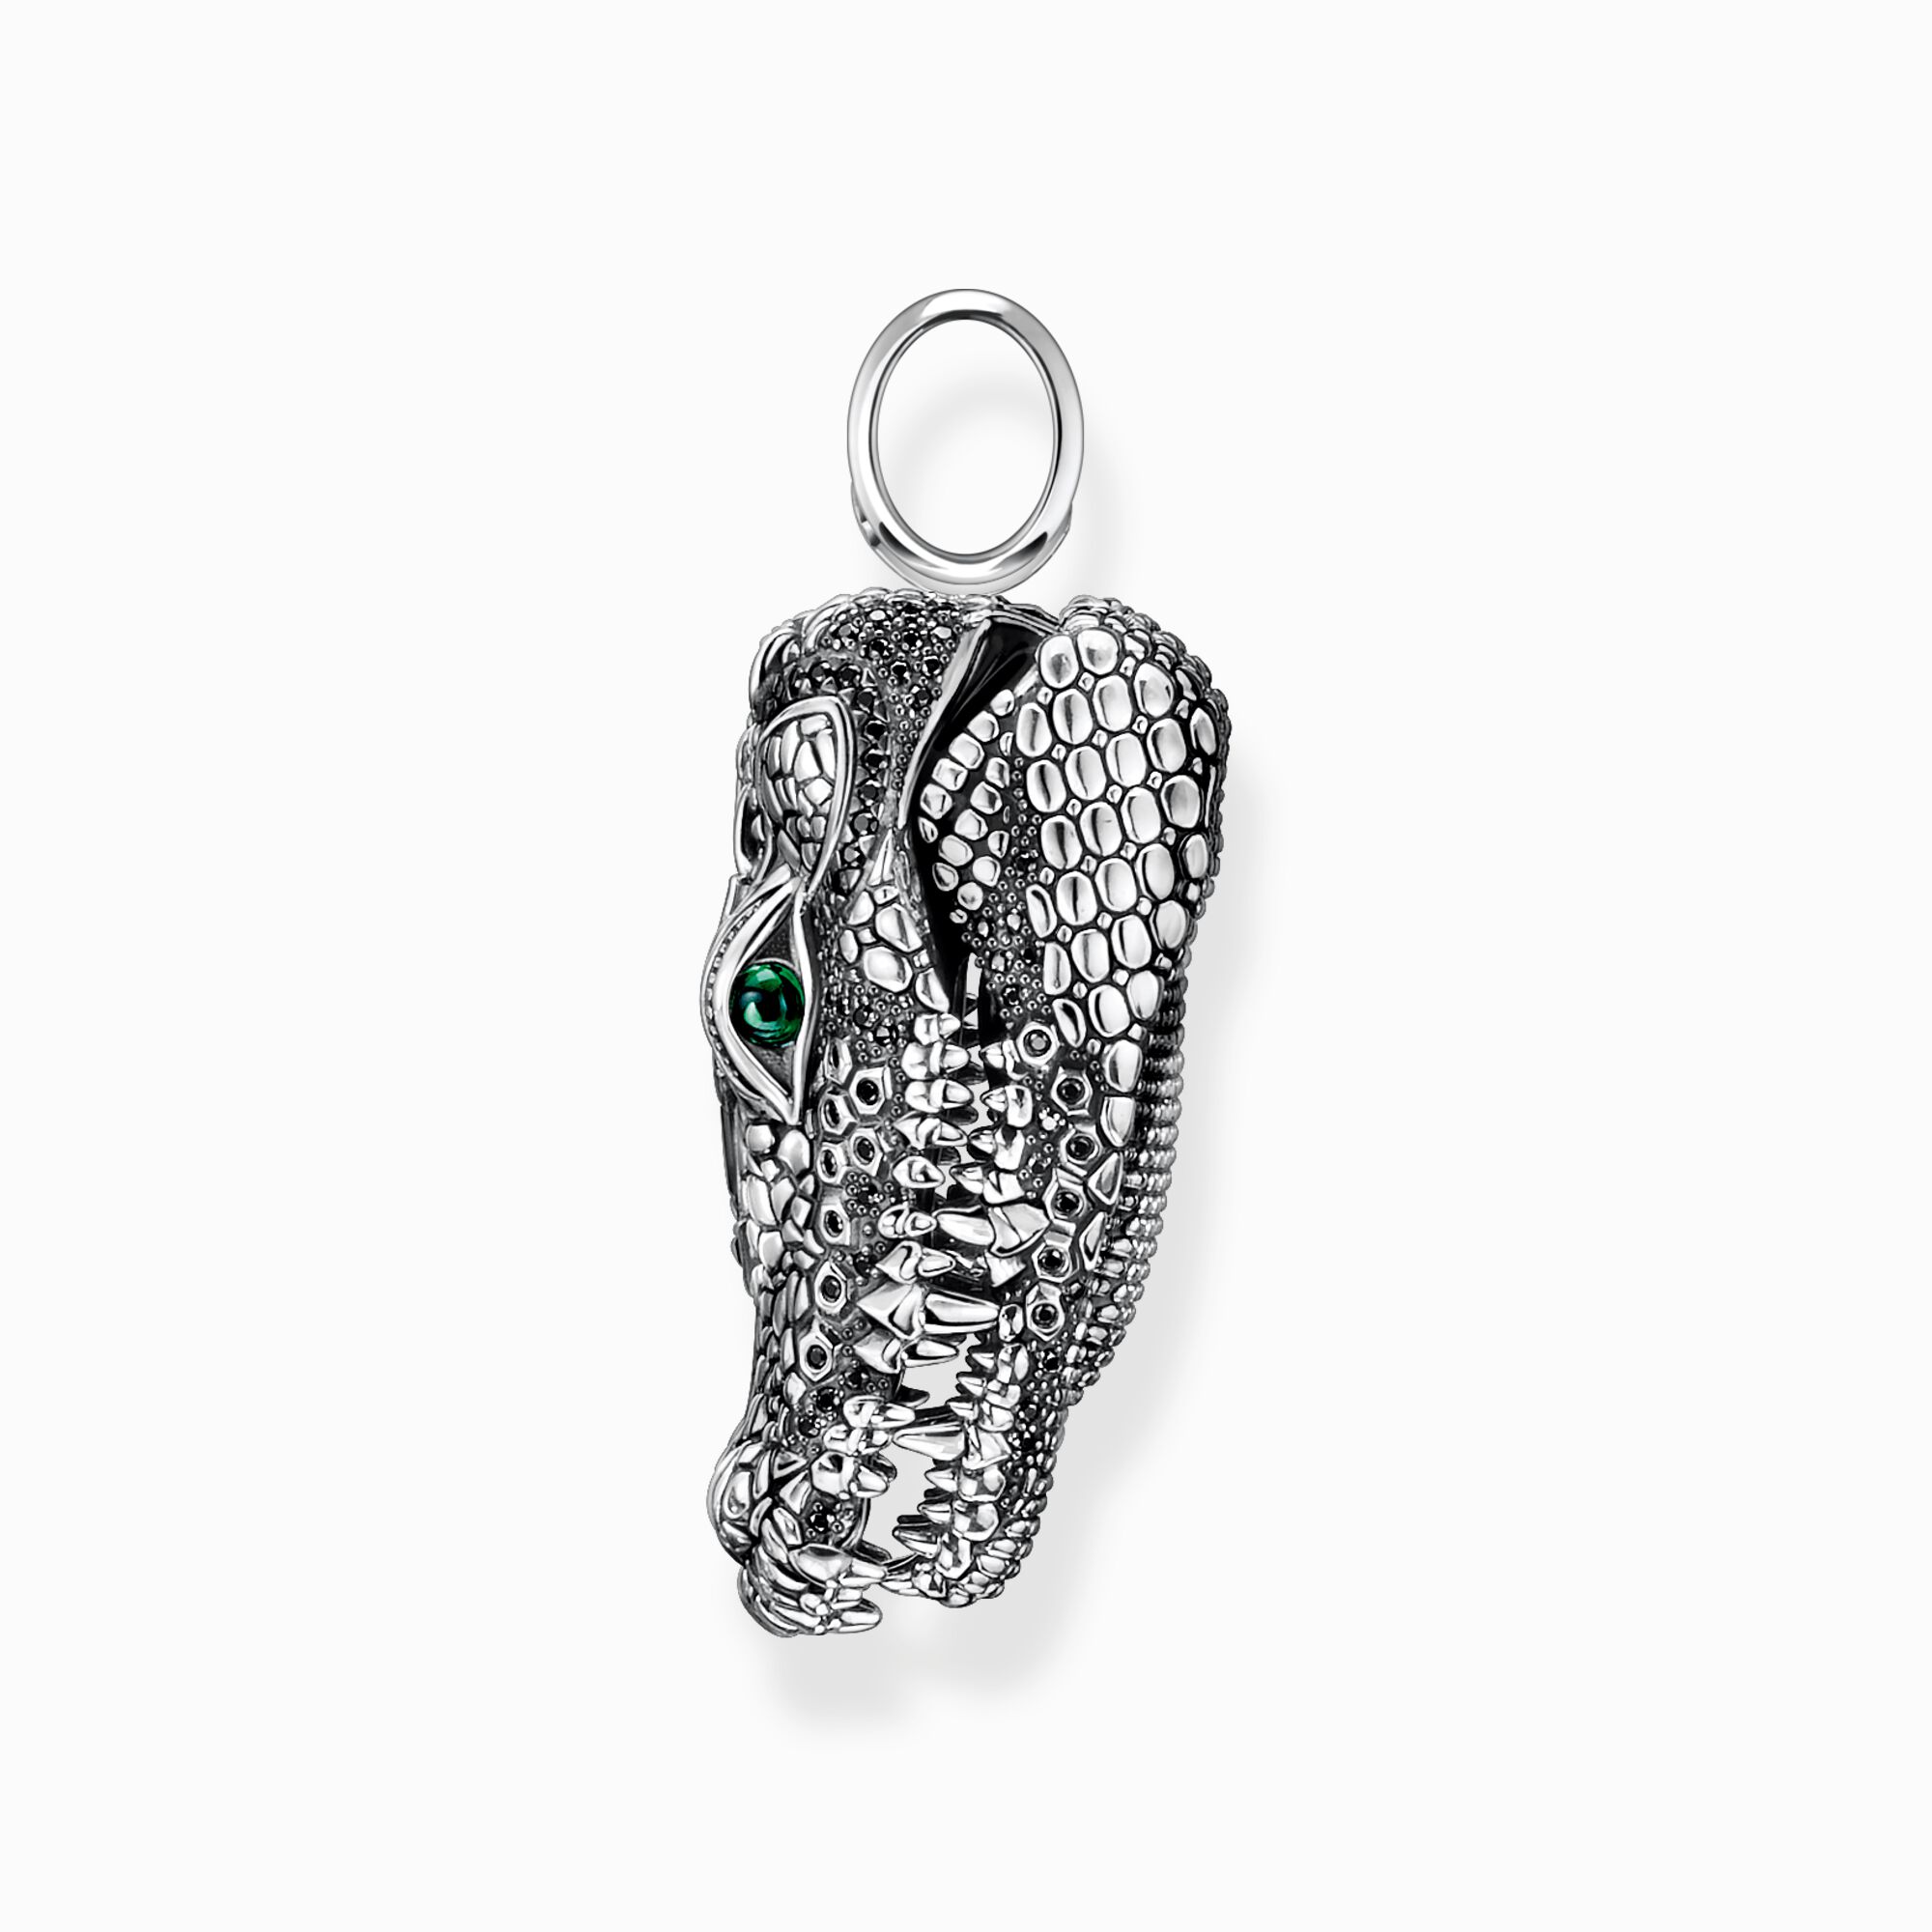 THOMAS grünen mit Krokodilkopf und Silber Kettenanhänger | Steinen SABO schwarzen geschwärzt